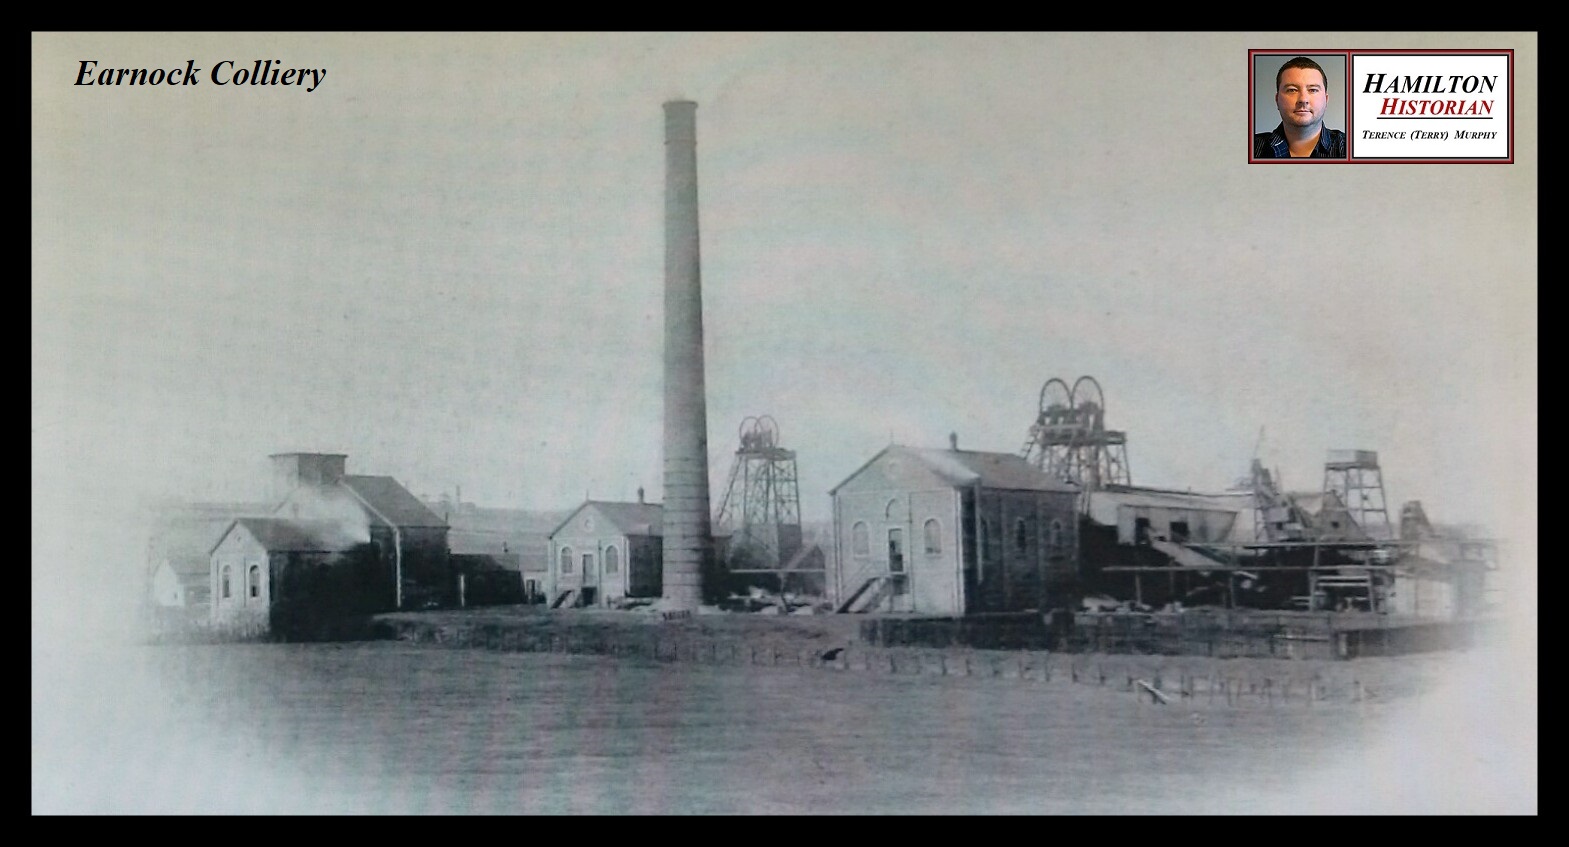 Earnock Colliery